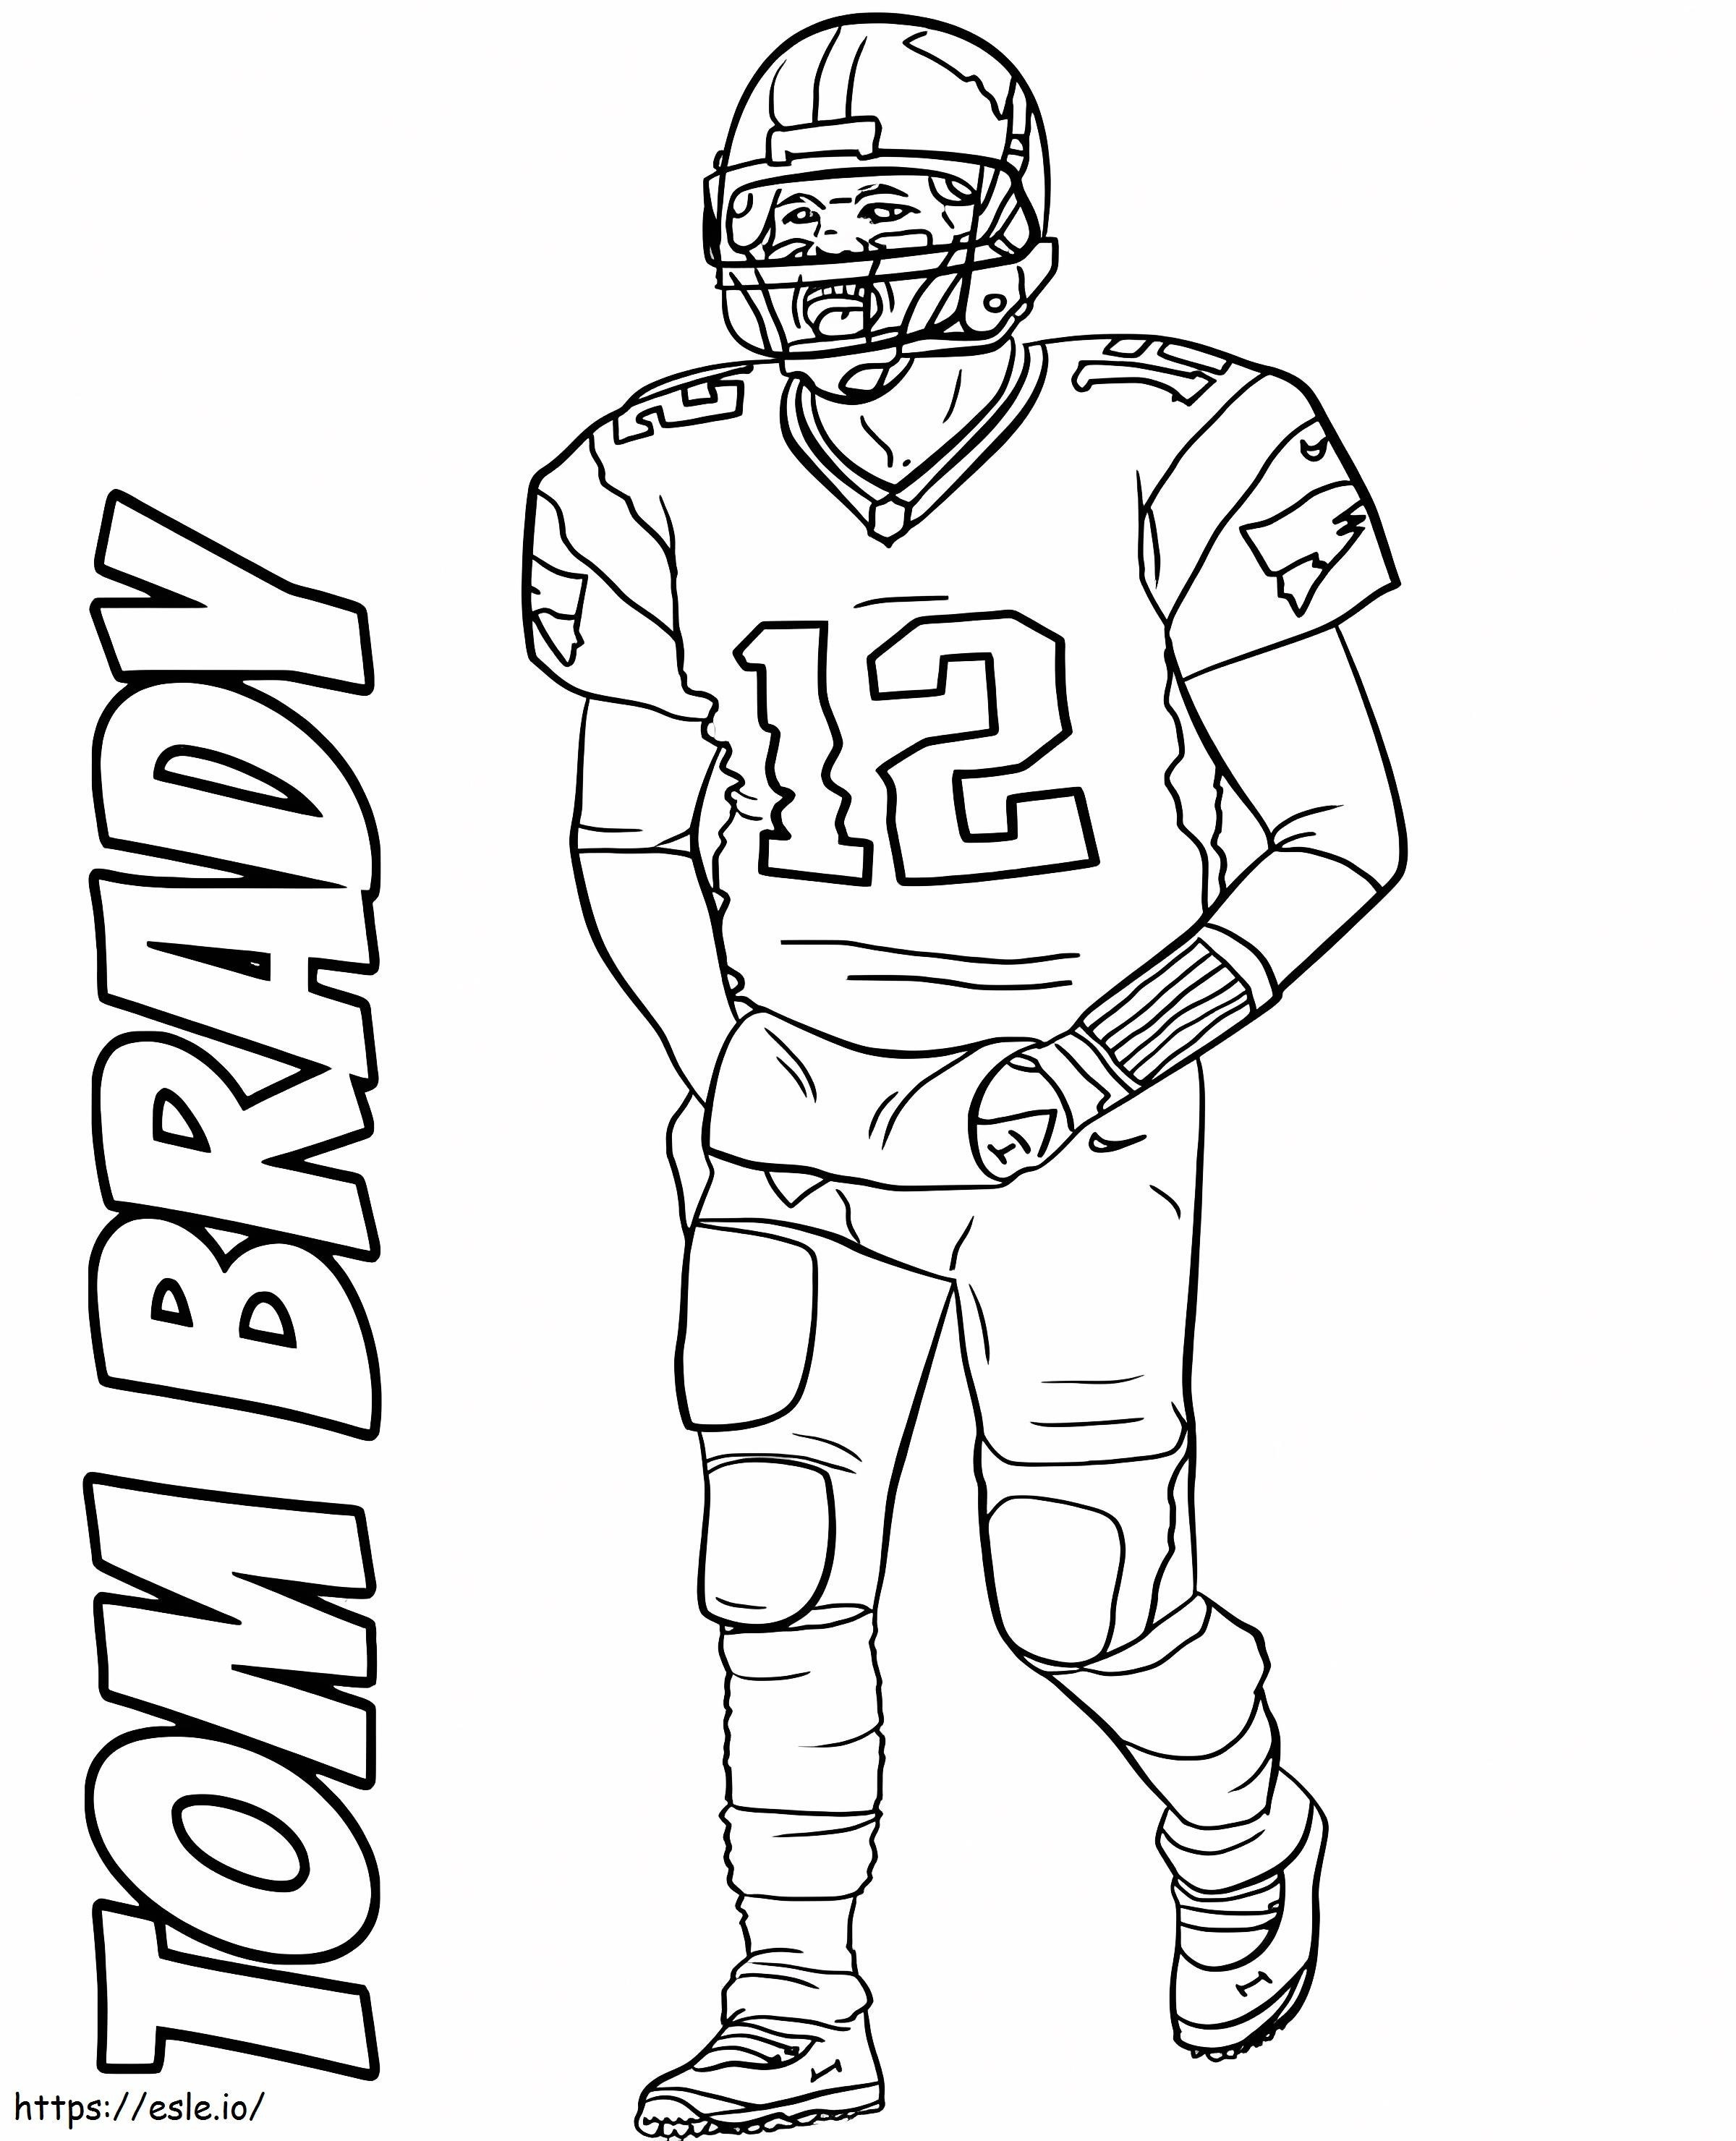 Tom Brady para imprimir gratis para colorear